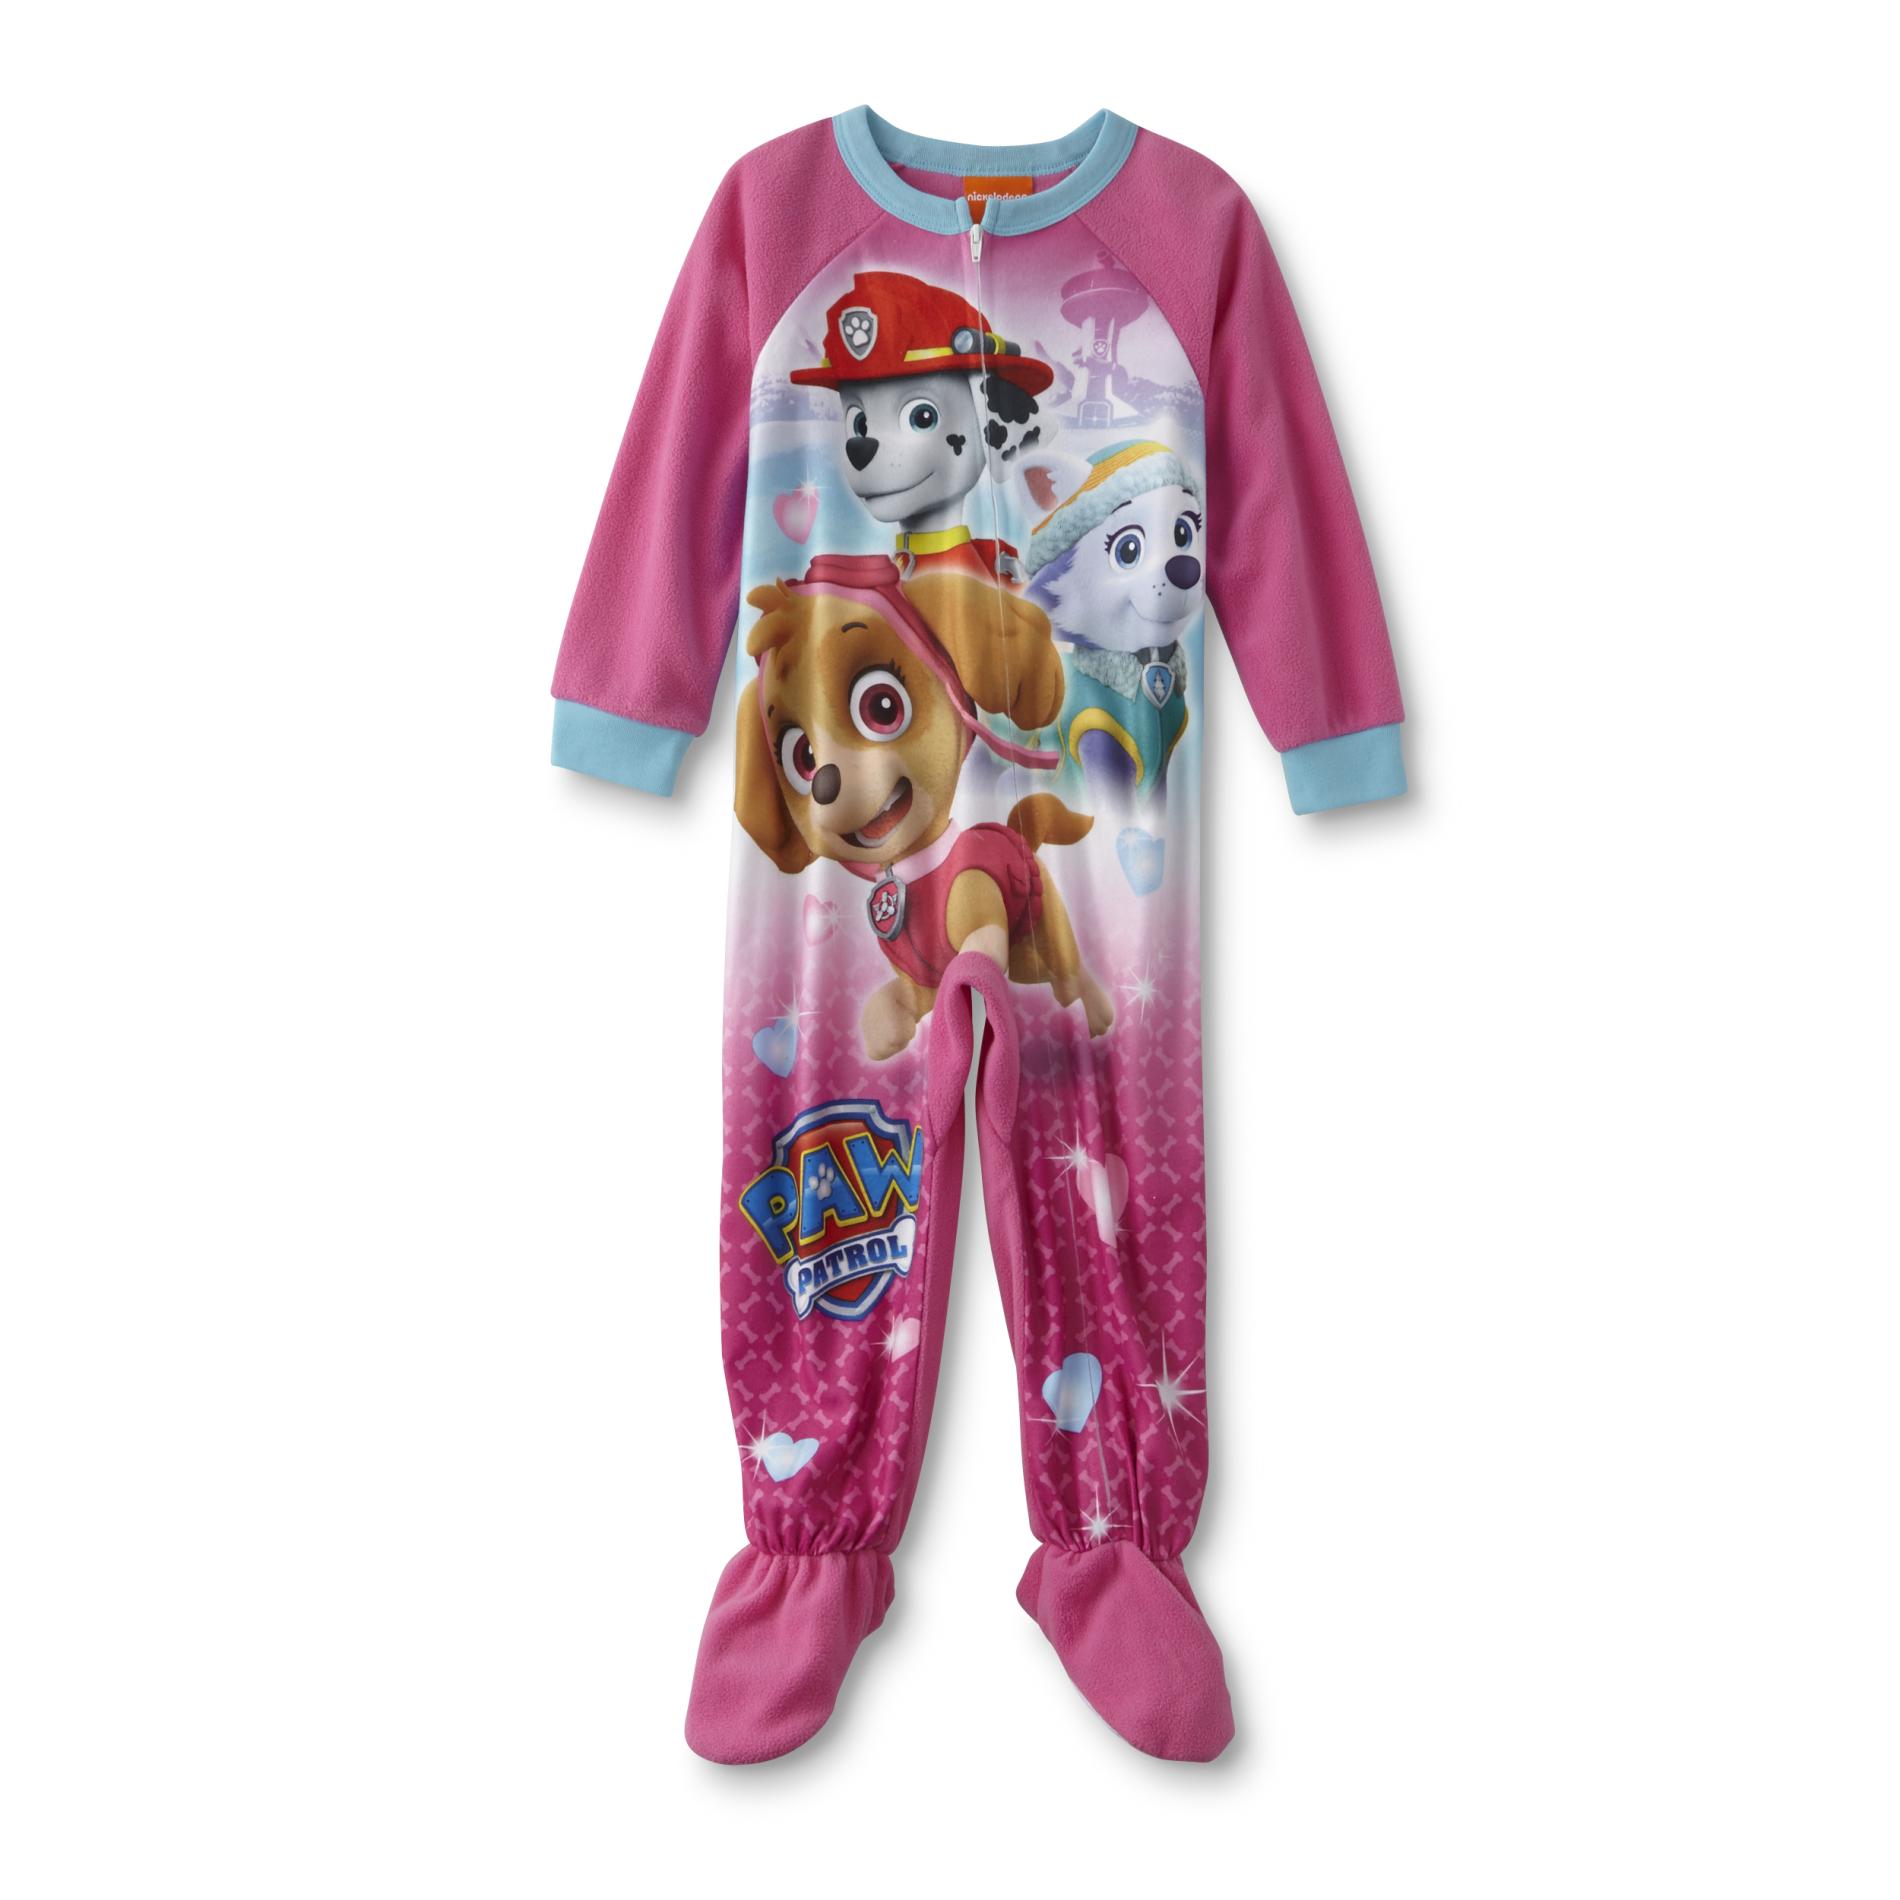 Nickelodeon PAW Patrol Toddler Girl's Sleeper Pajamas